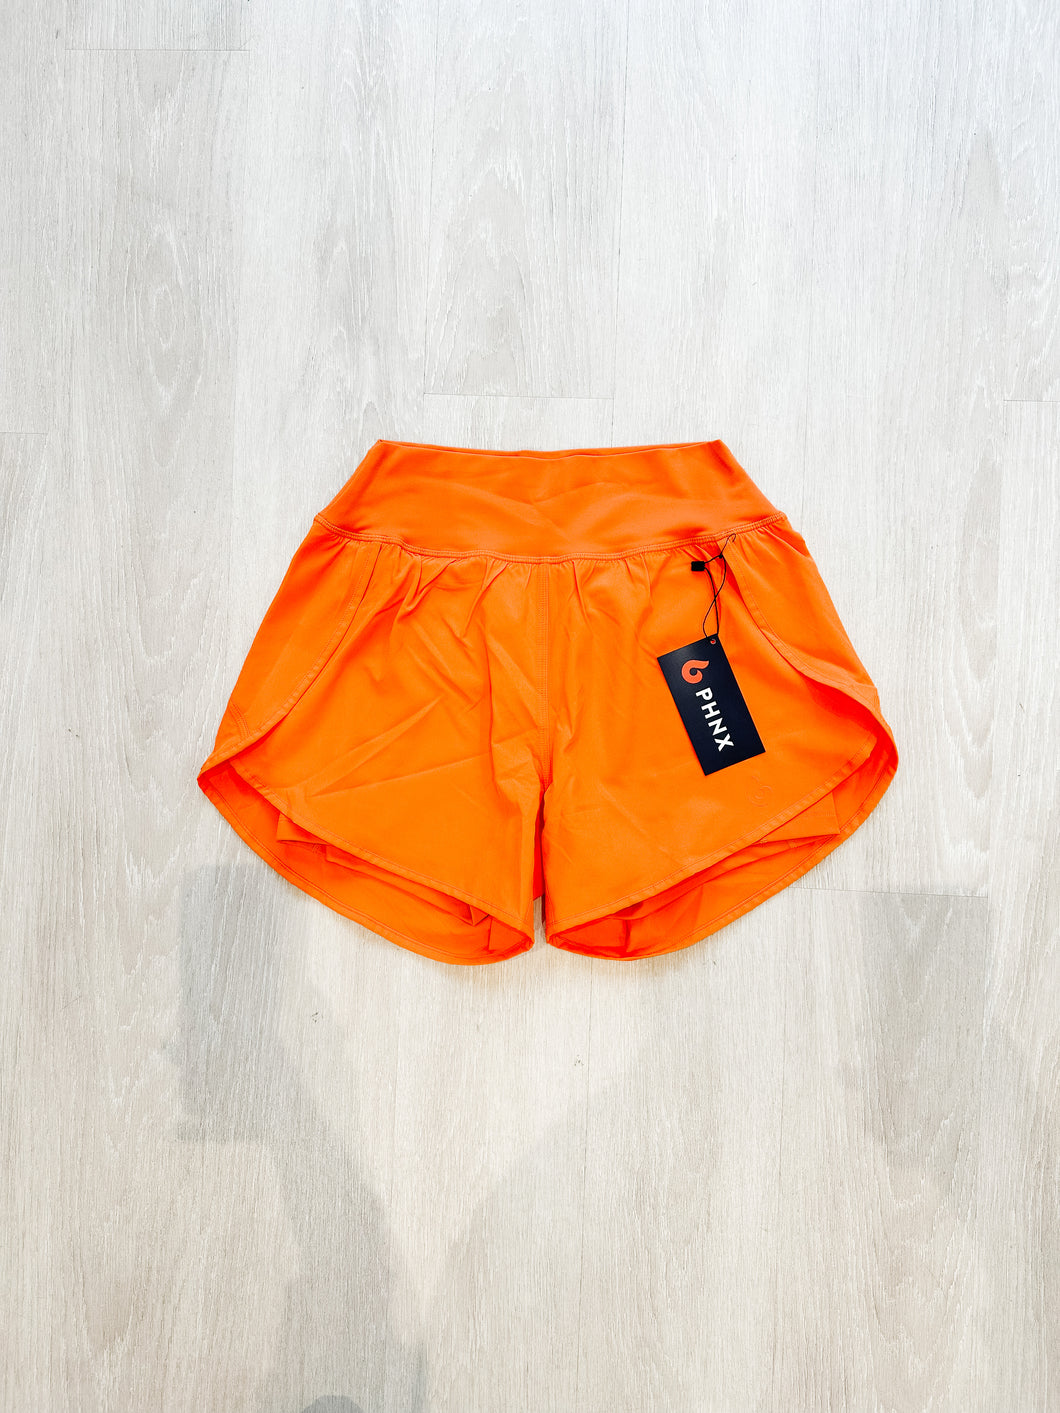 PHNX High Waist Running Shorts- Orange